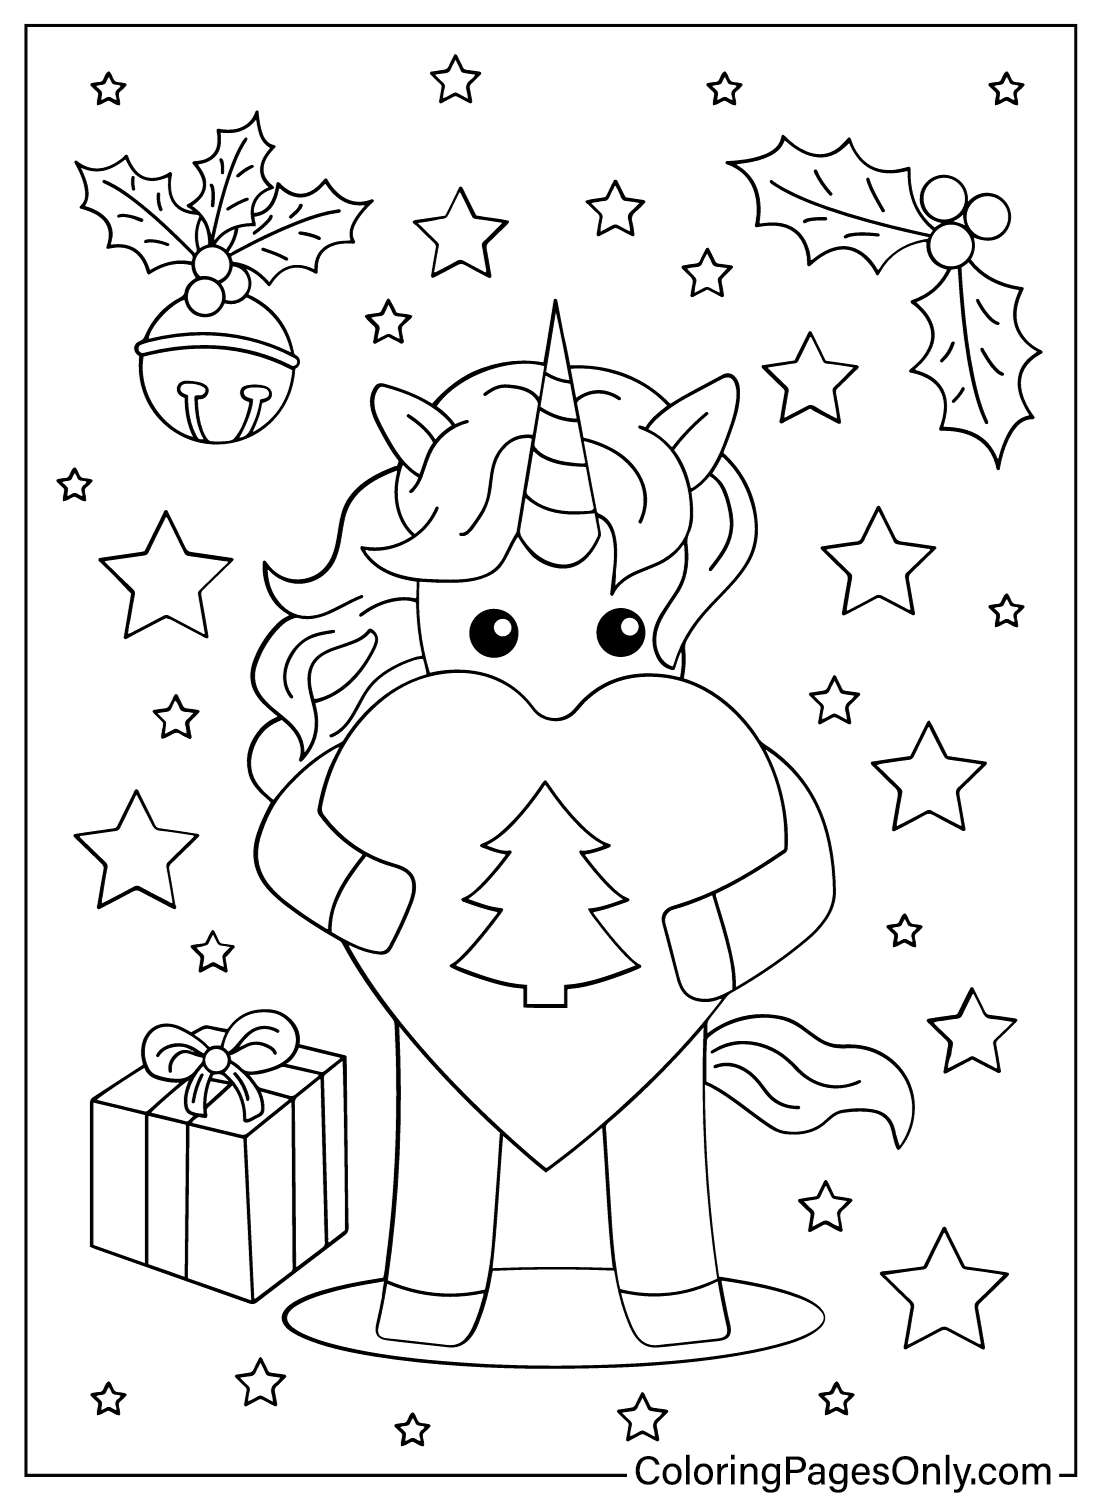 Páginas para colorear de unicornios navideños de animales navideños